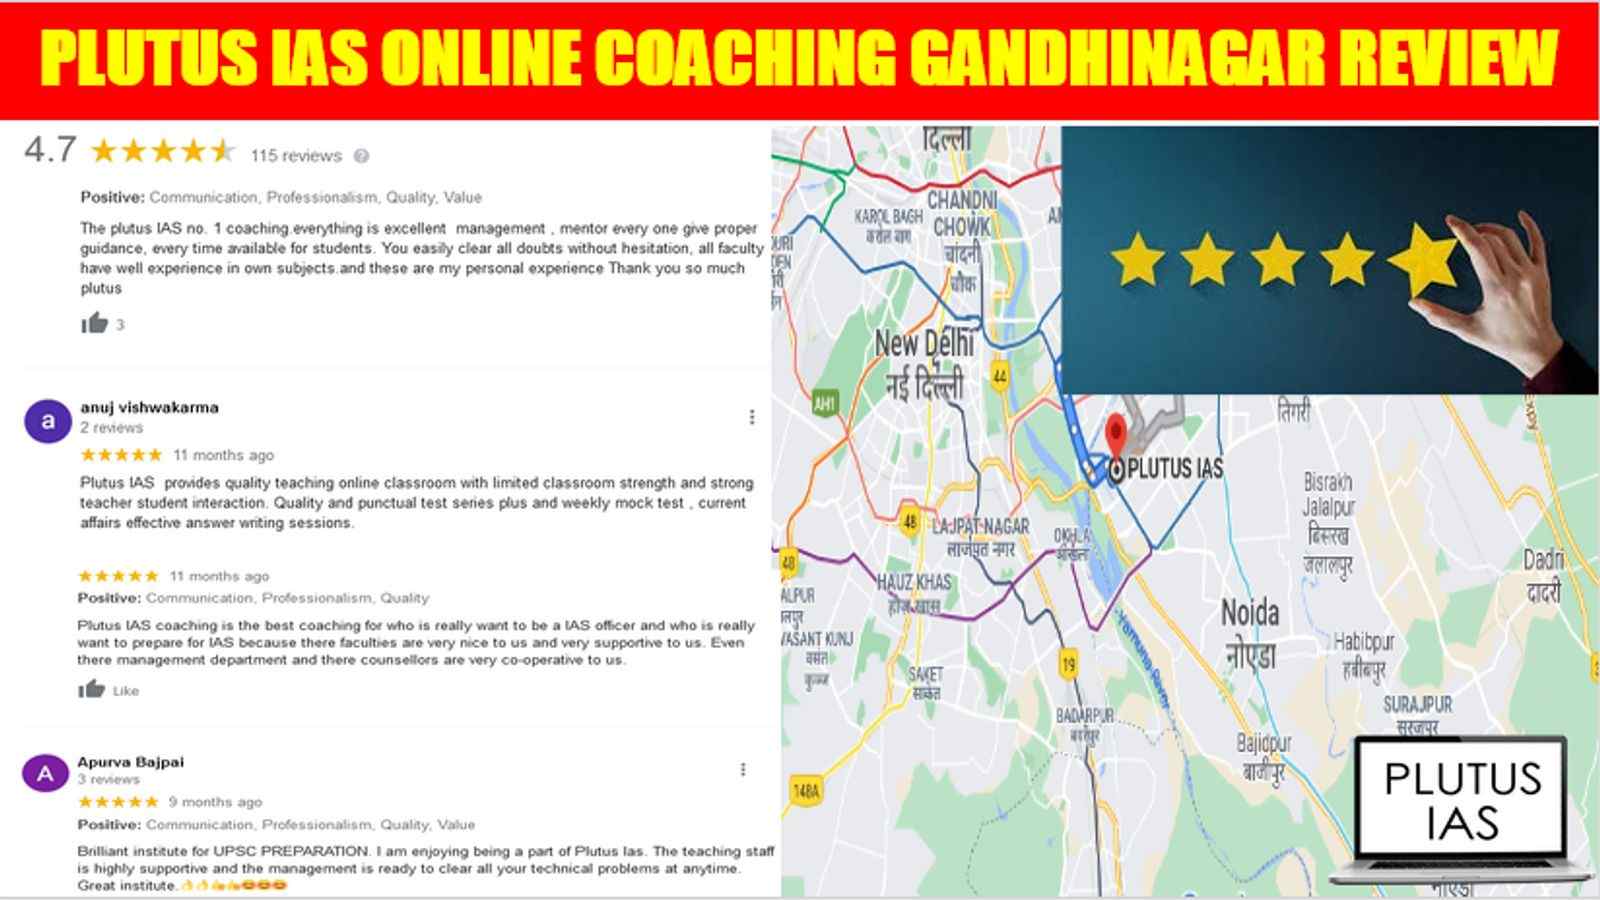 Plutus IAS Online Coaching Gandhinagar Review